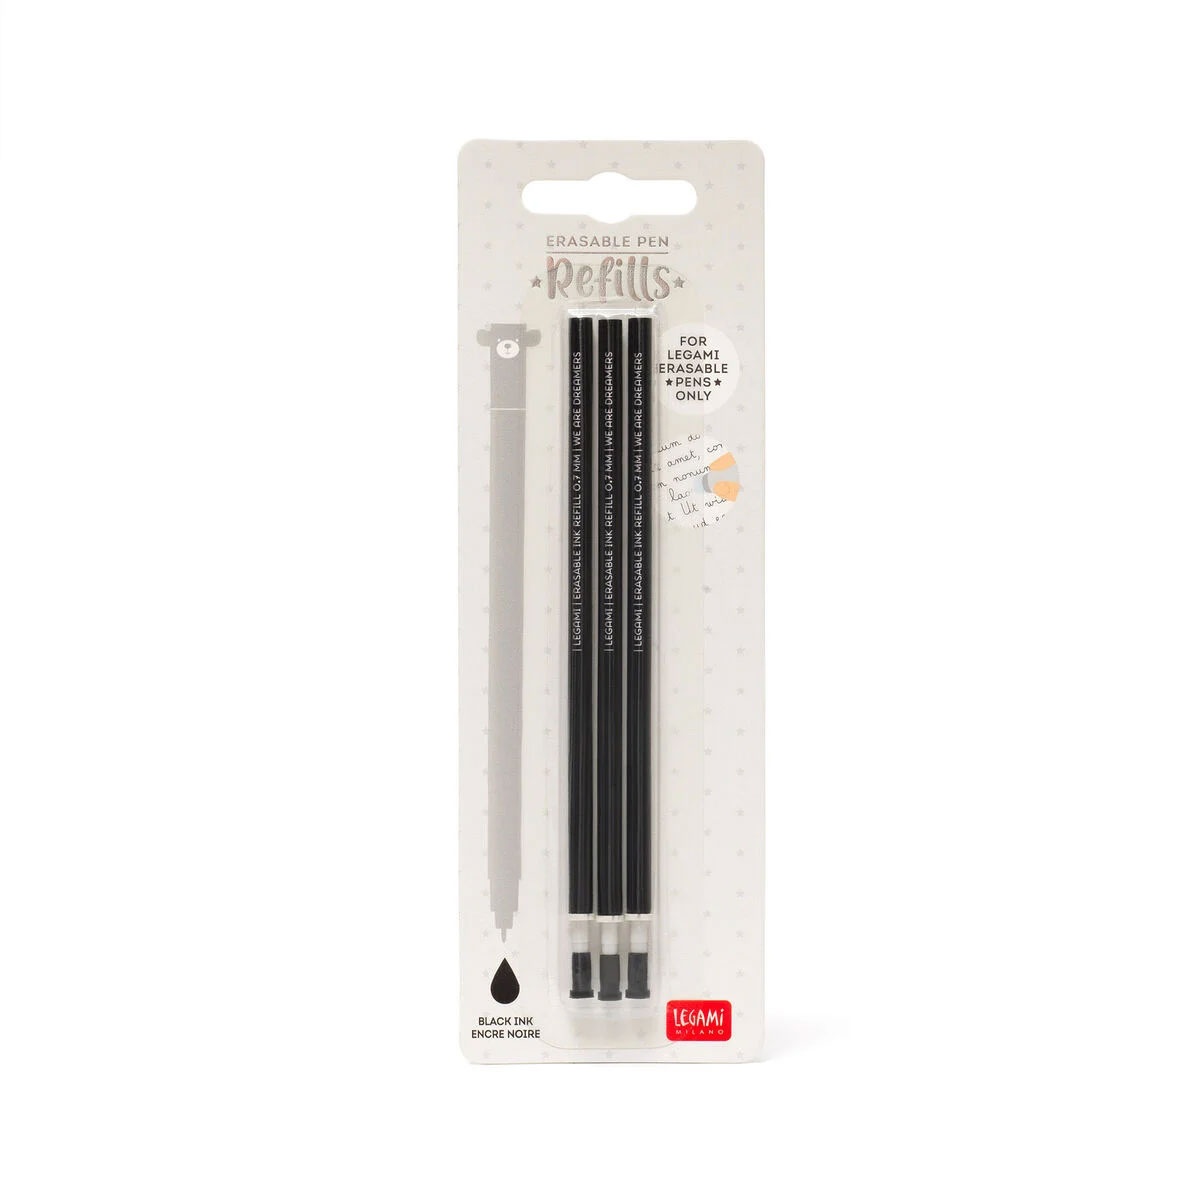 Ersatzmine für löschbaren Gelstift - Erasable Pen schwarz